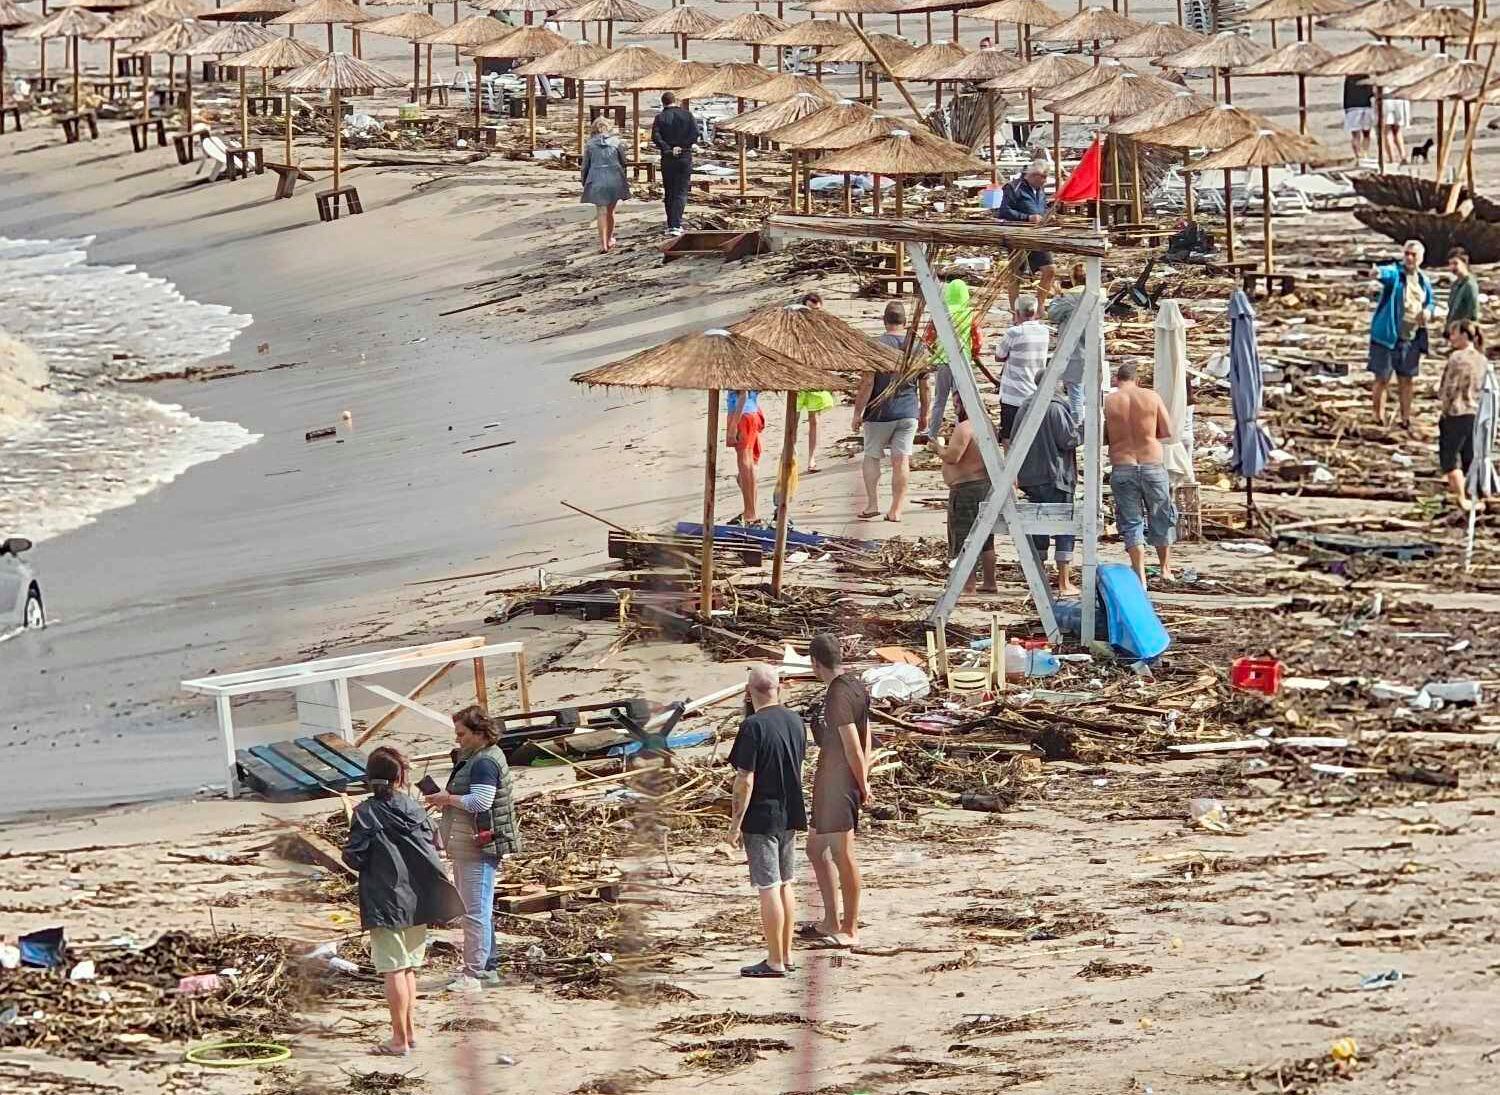 Varias personas observan los daños causados por una tormenta en la playa de Arapya, Bulgaria (AP Foto/Milena Genadieva)